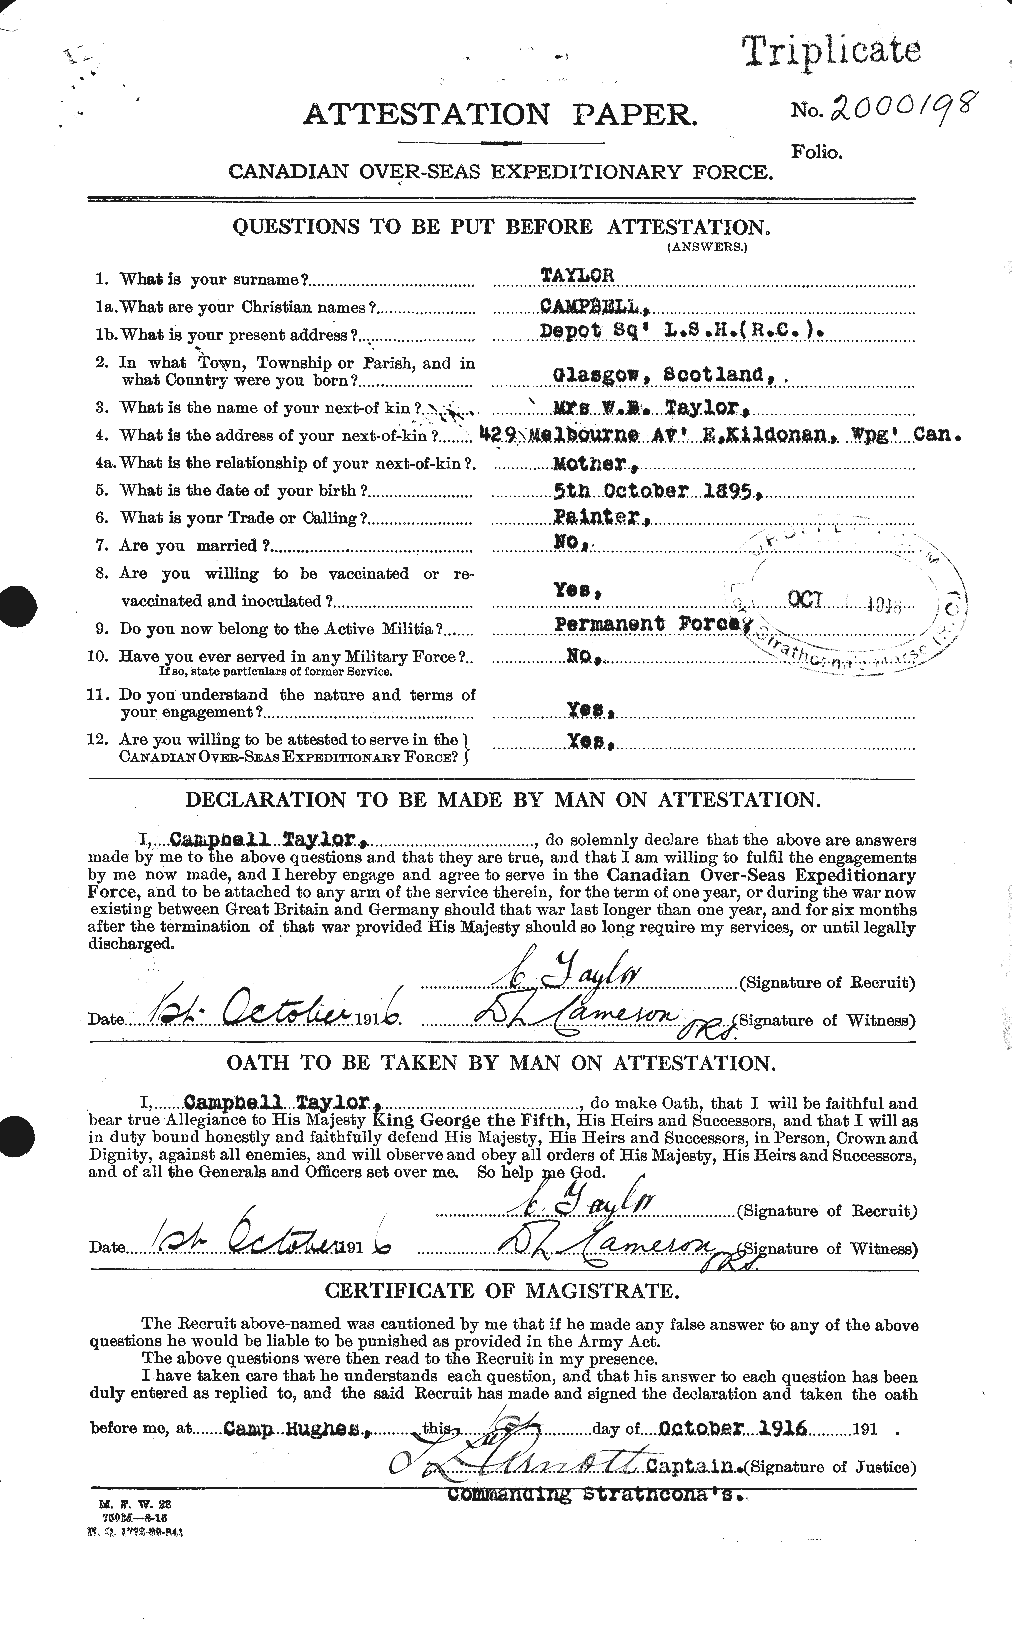 Dossiers du Personnel de la Première Guerre mondiale - CEC 626782a